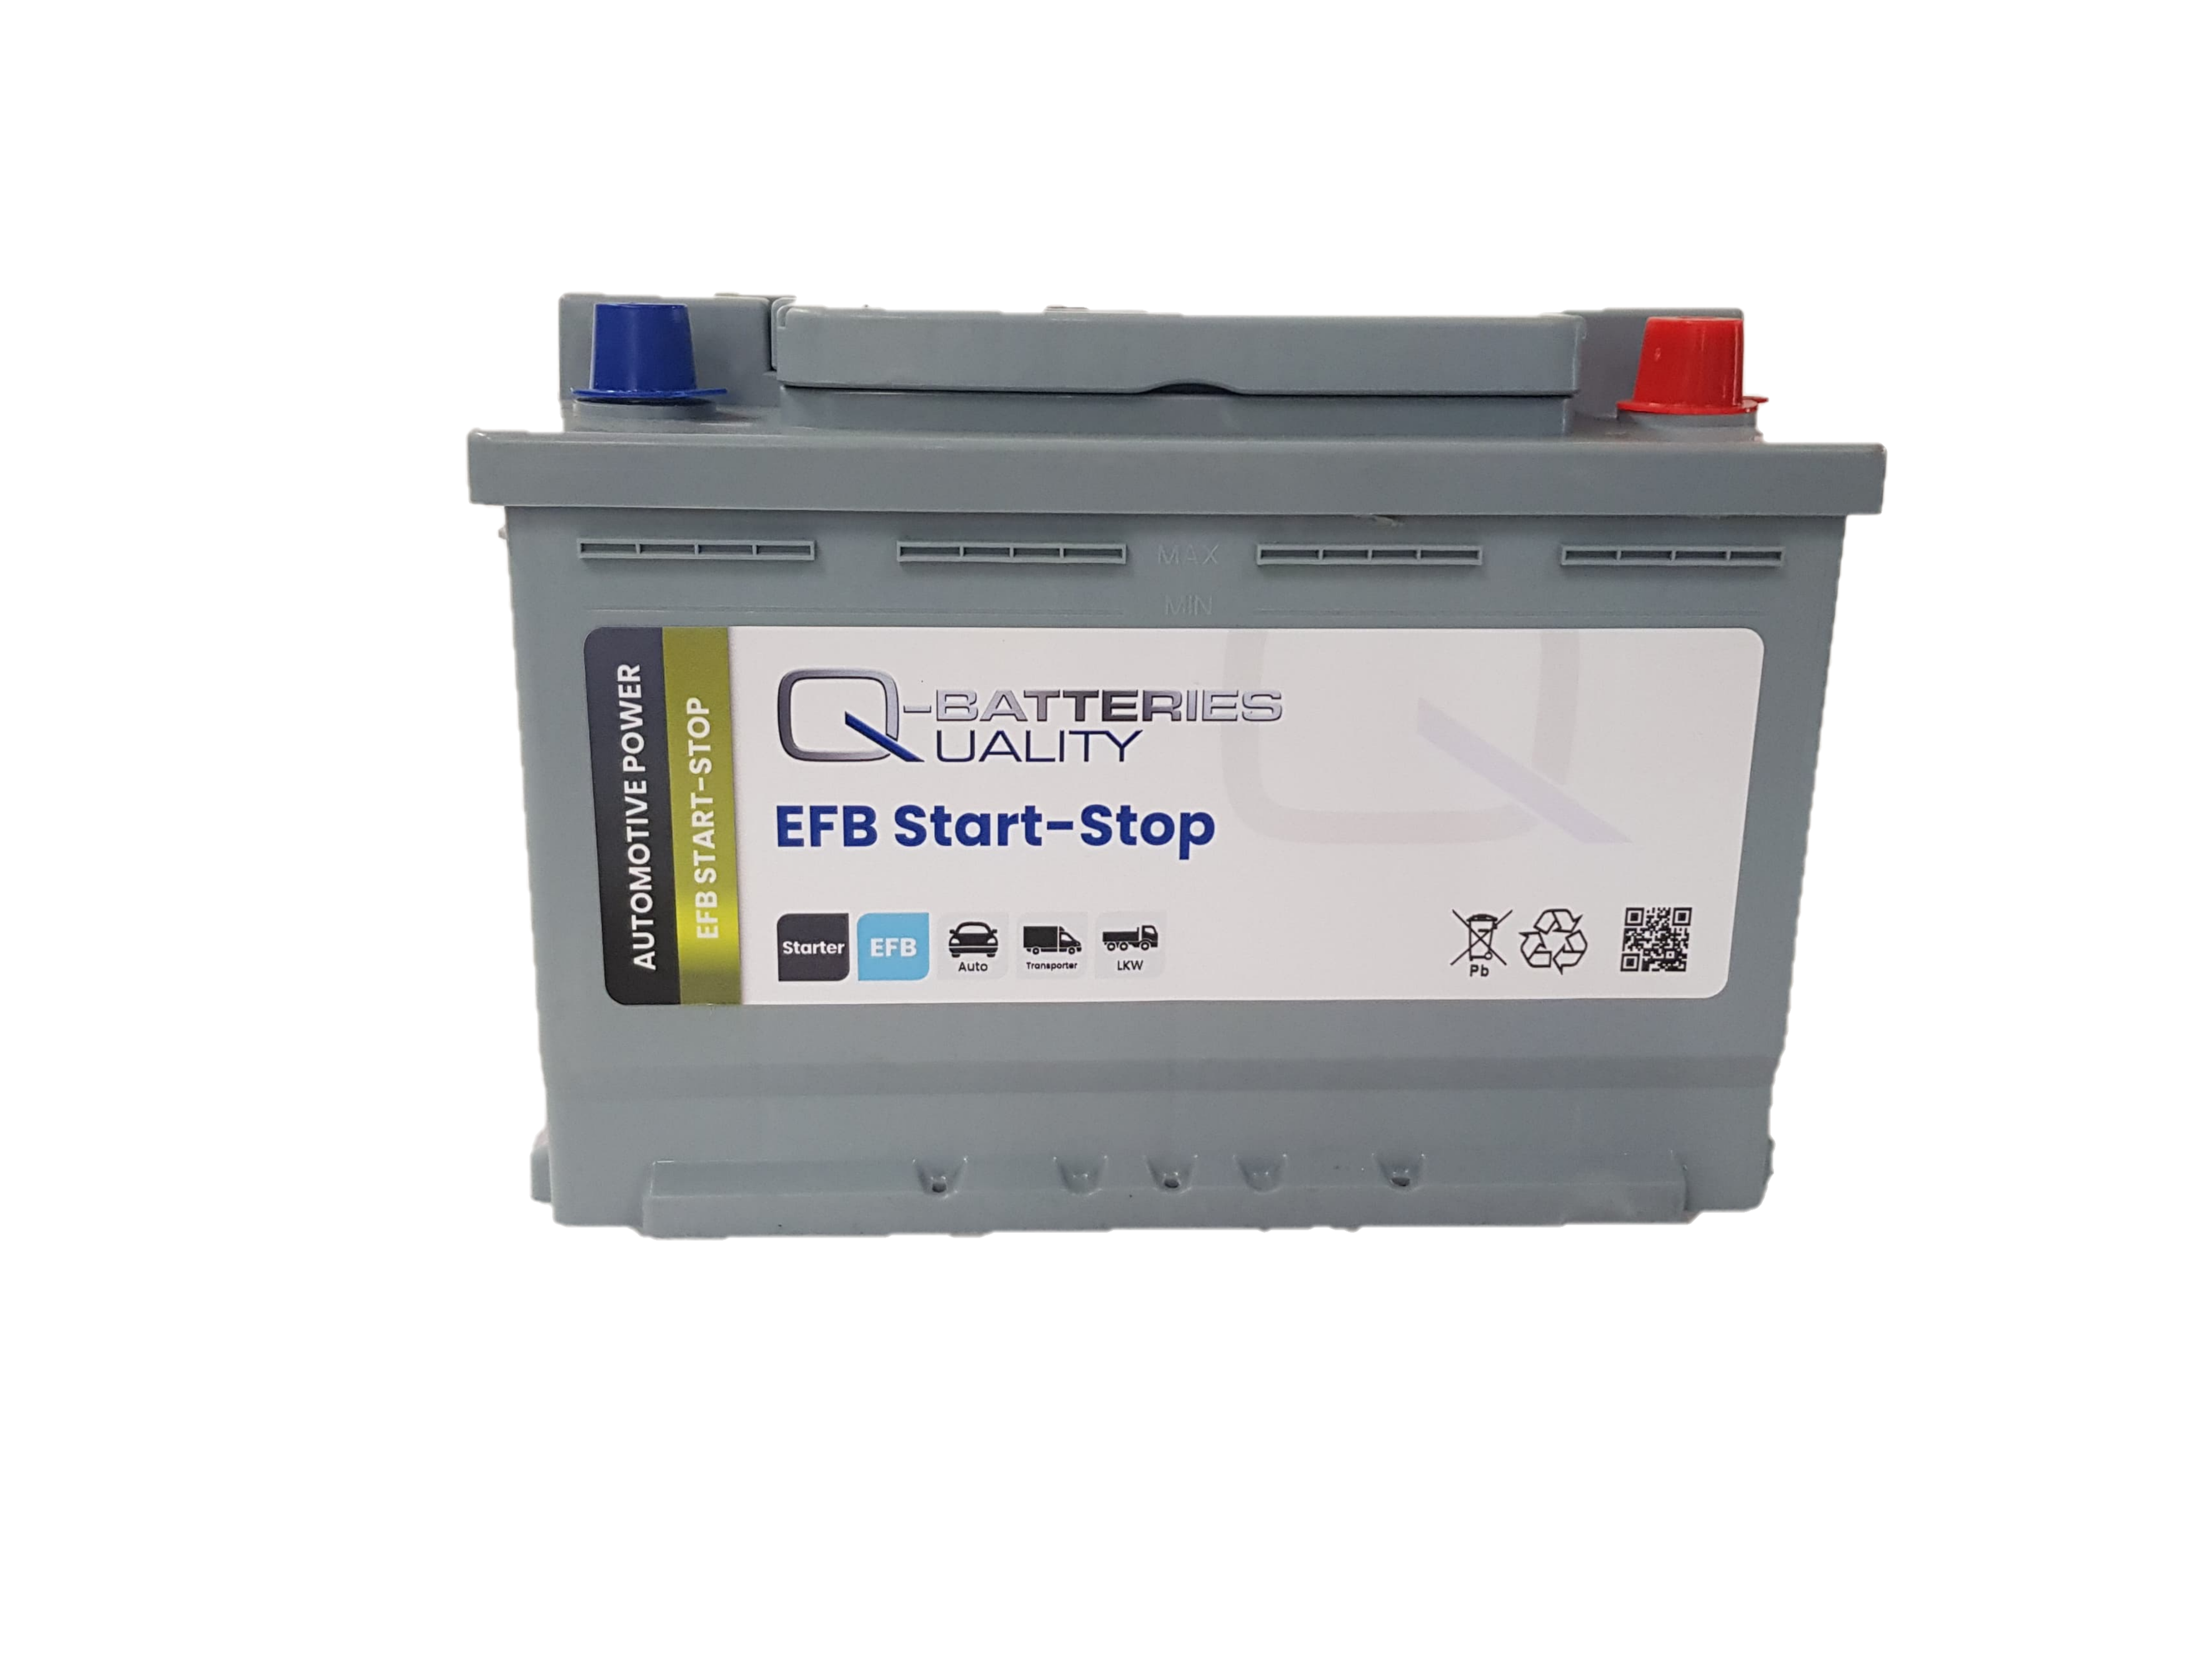 EXIDE Start-Stop EL600 Batterie 12V 60Ah 640A B13 EFB-Batterie